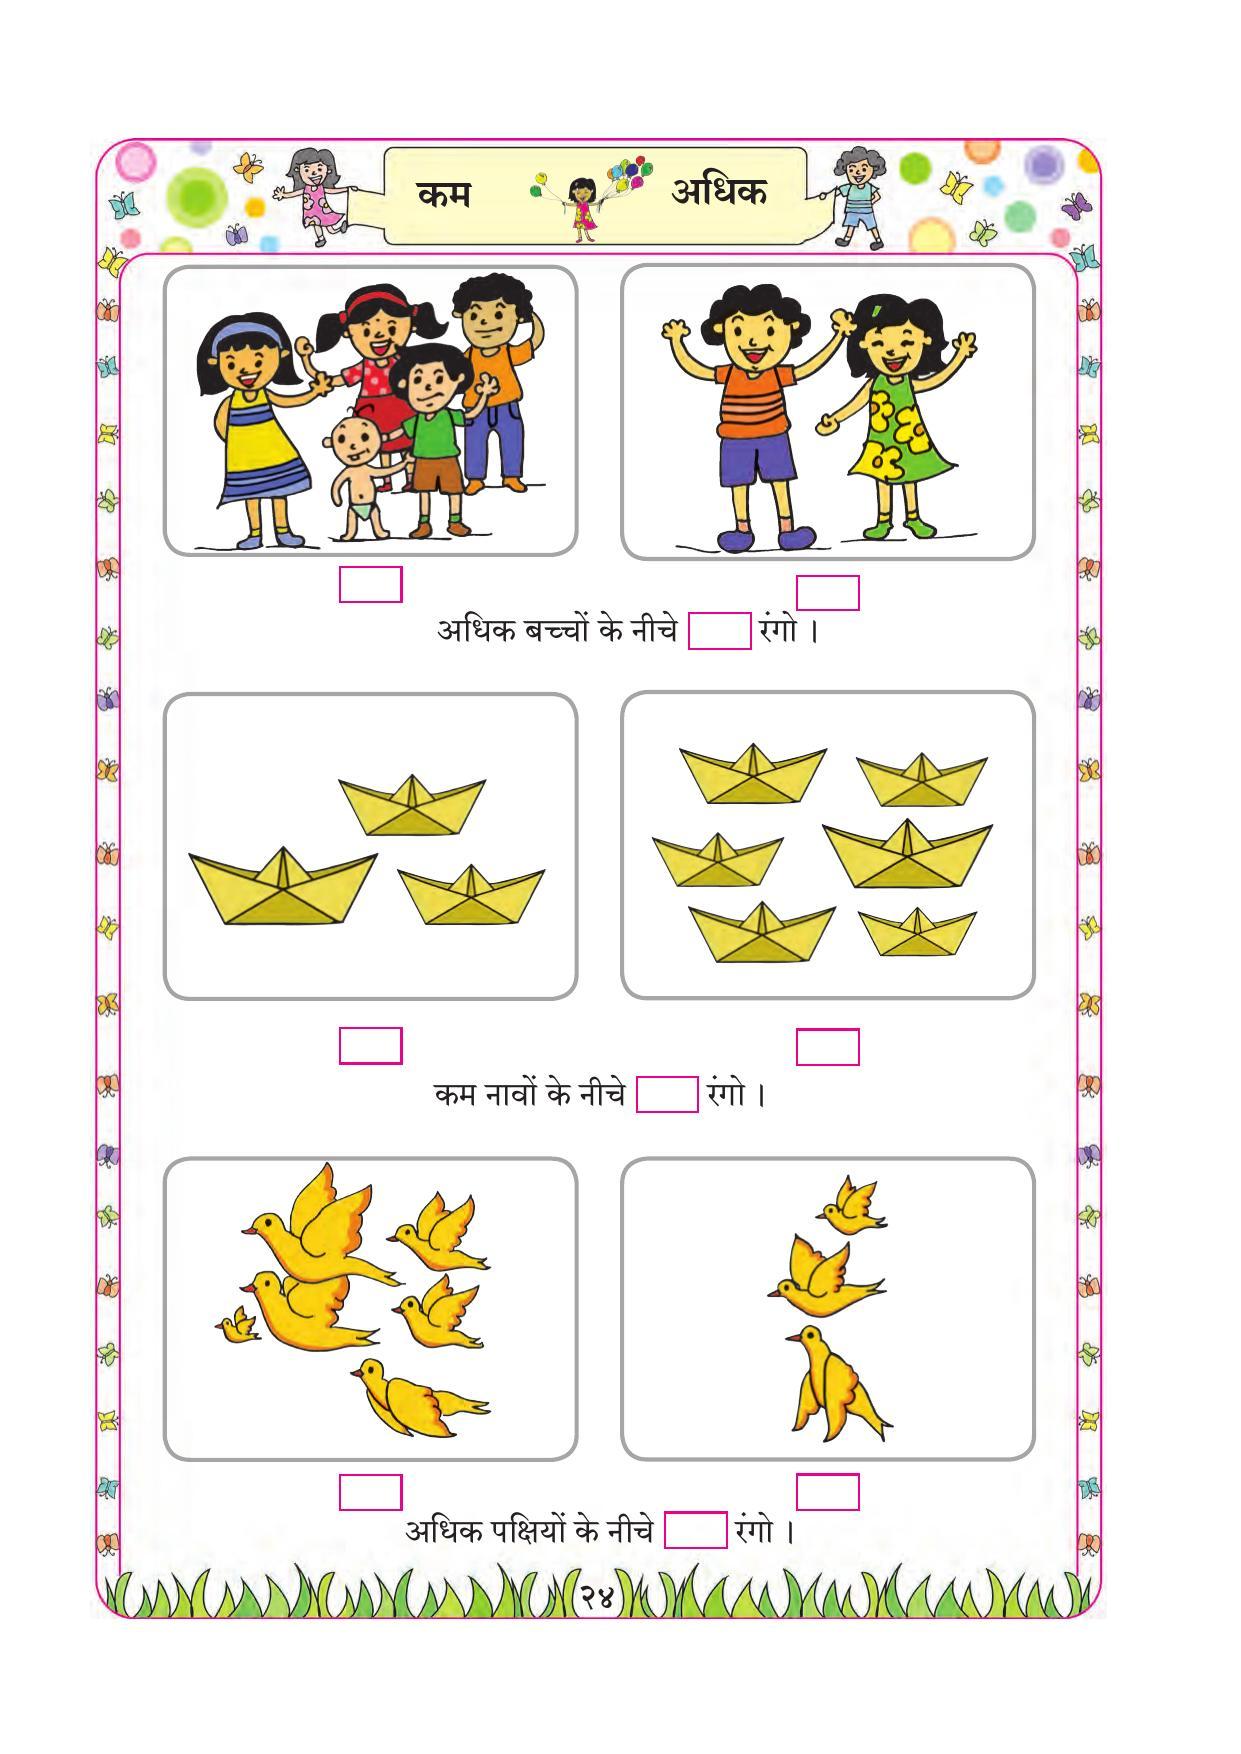 Maharashtra Board Class 1 Maths (Hindi Medium) Textbook - Page 34